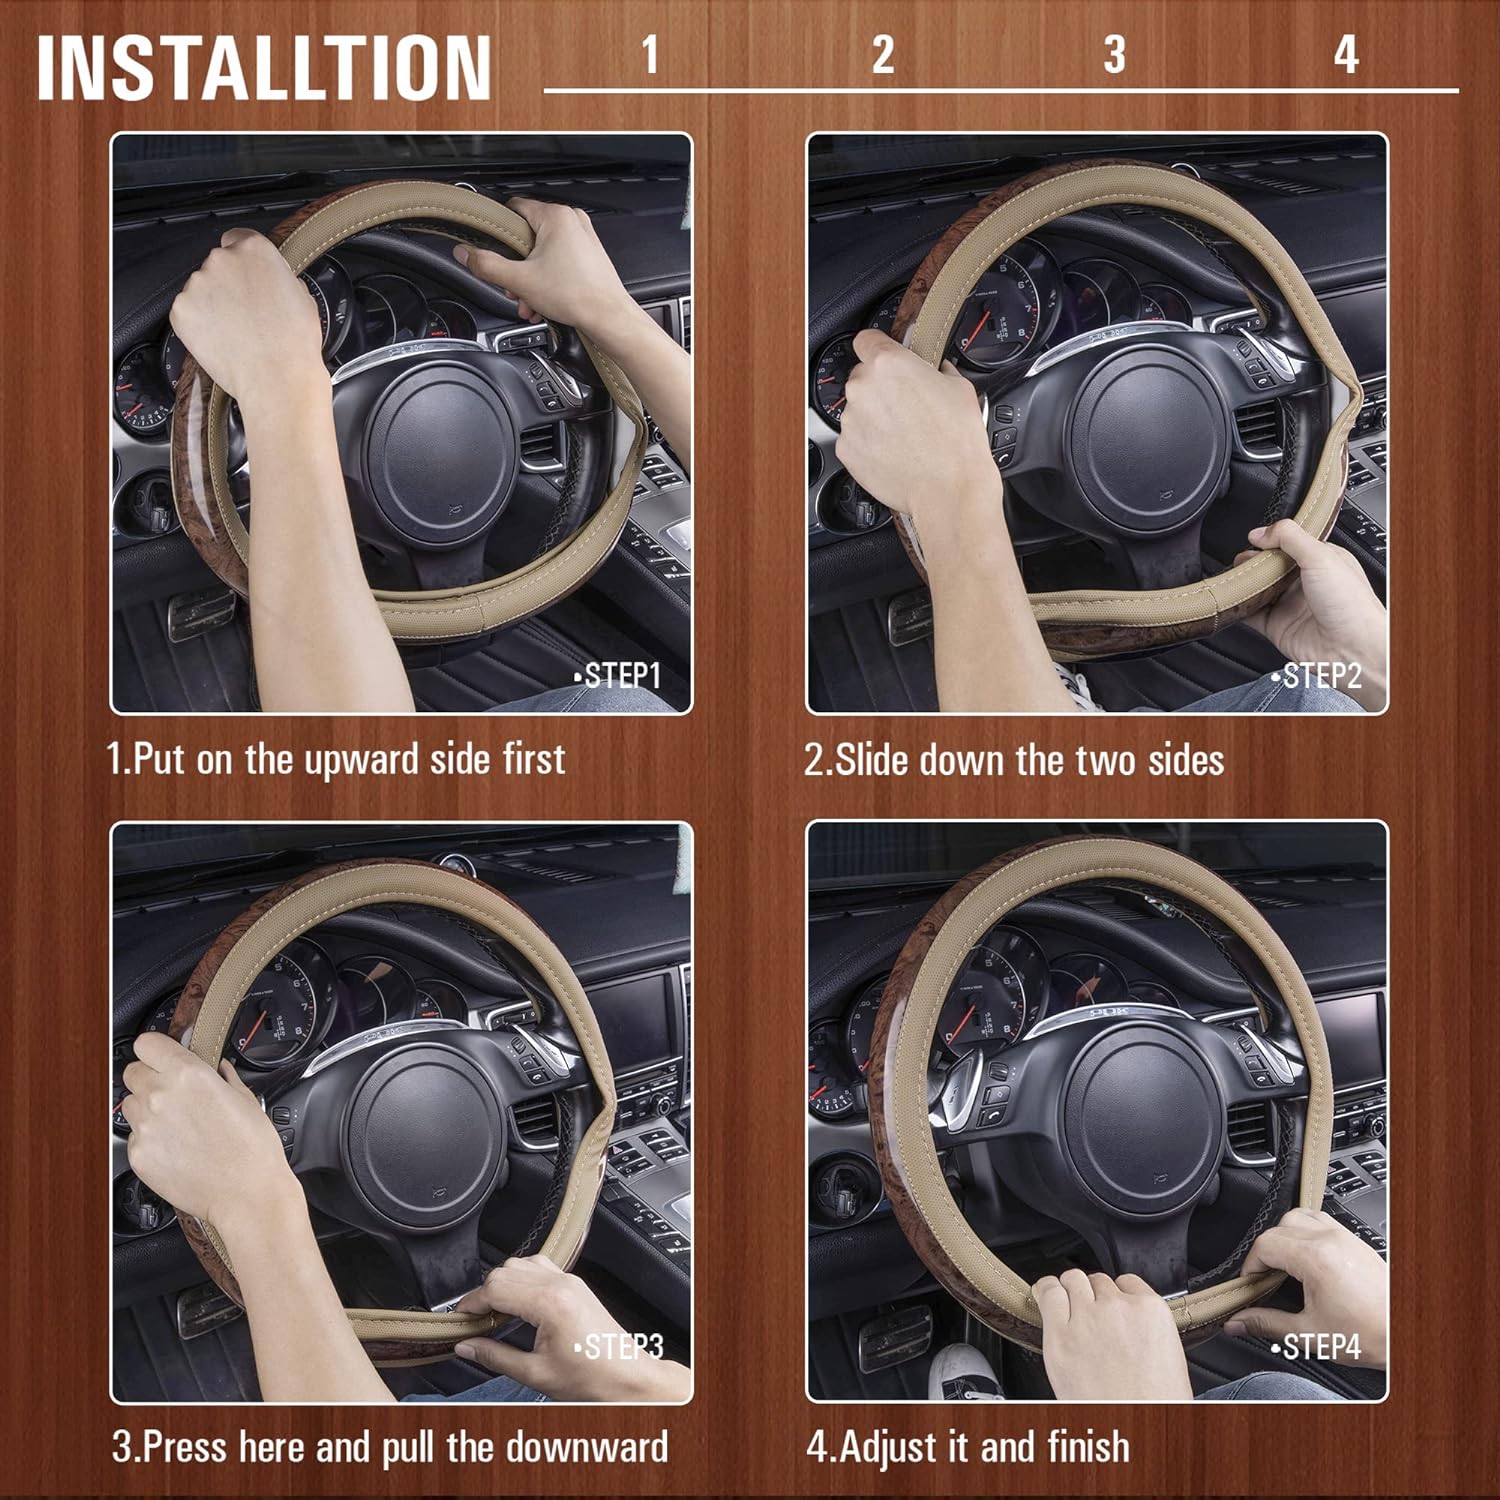 CAR PASS Wood Grain Microfiber Leather Steering Wheel Cover, Universal Fit for 14 1/2-15 inch Beige Steering Wheel, Anti-Skip Veins Design,Trucks, Suvs,Vans, Sedans (Beige)